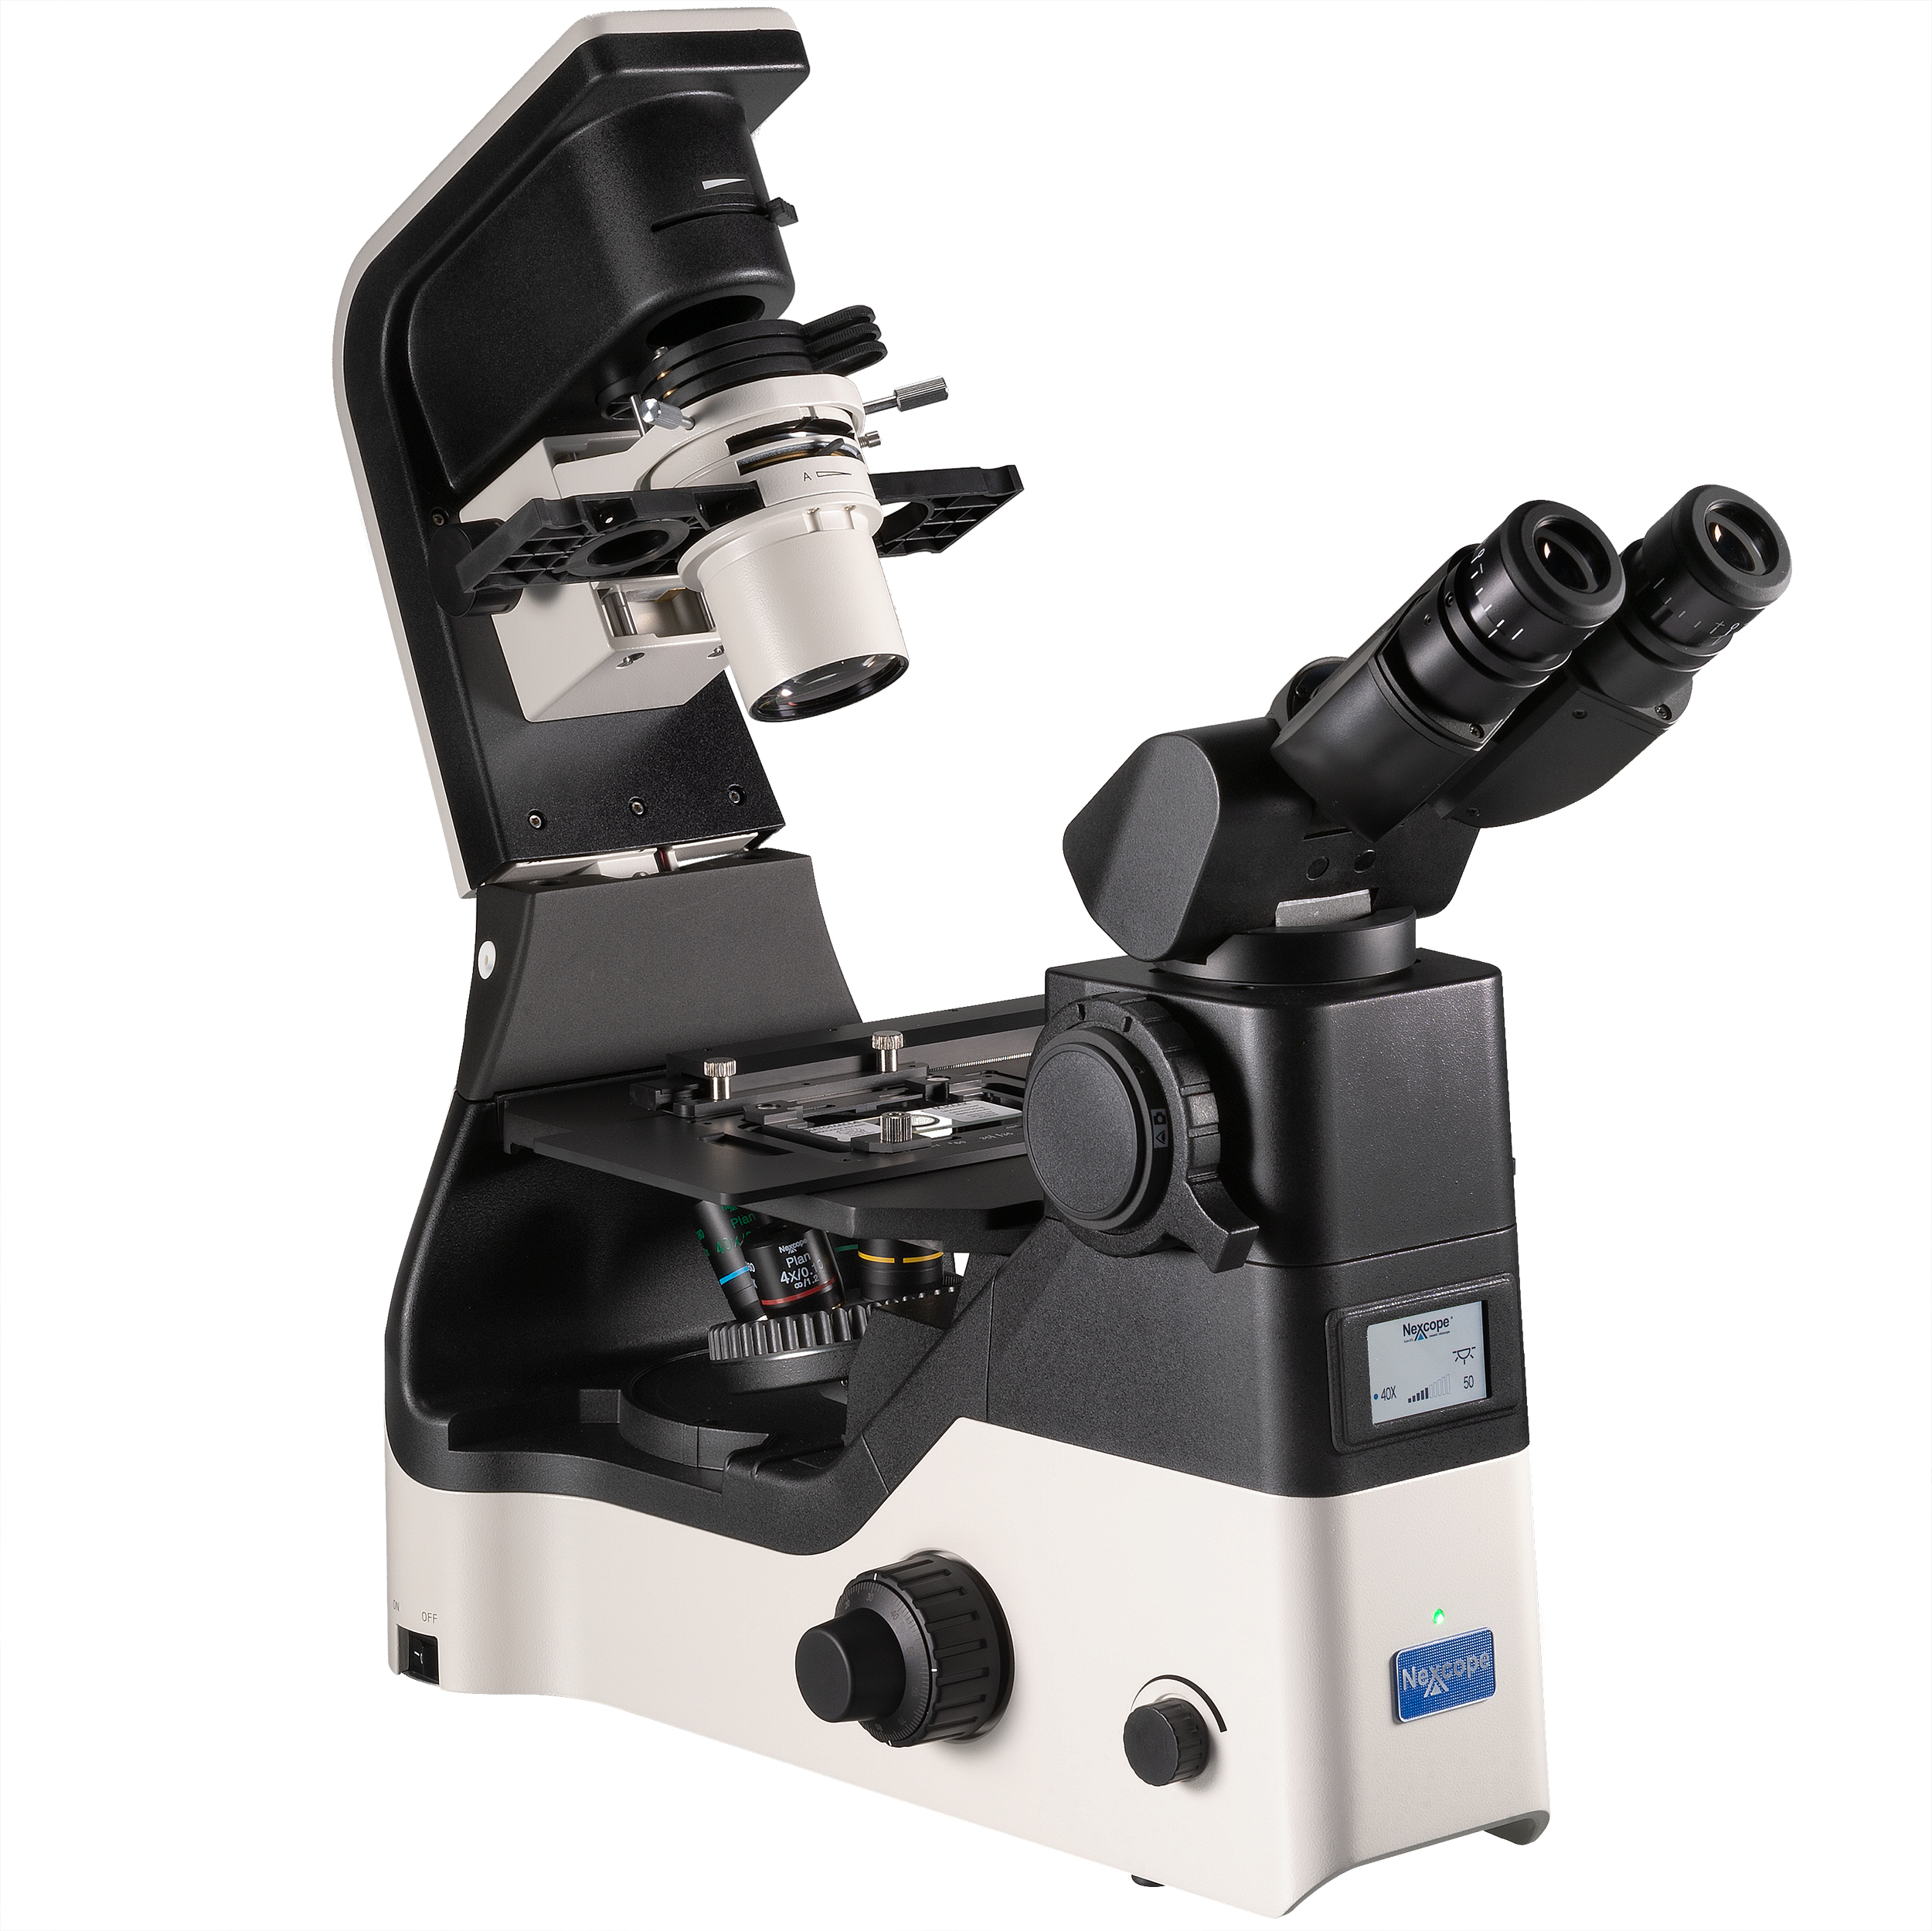 Nexcope NIB630 microscopio inverso de investigación con unidad de iluminación inclinable